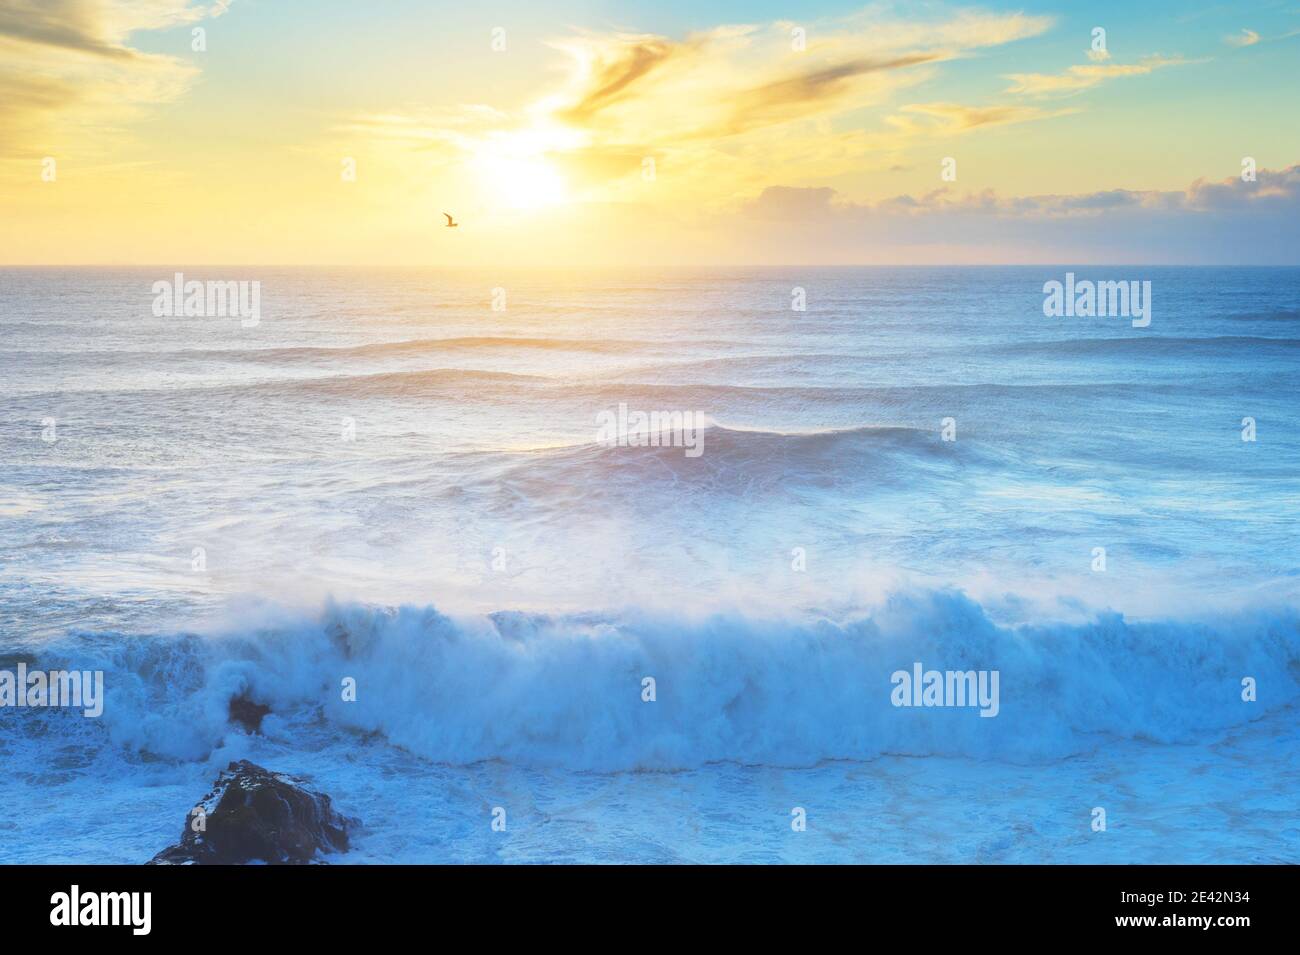 Vagues sur l'océan Atlantique au coucher du soleil. Nazaré, Portugal Banque D'Images